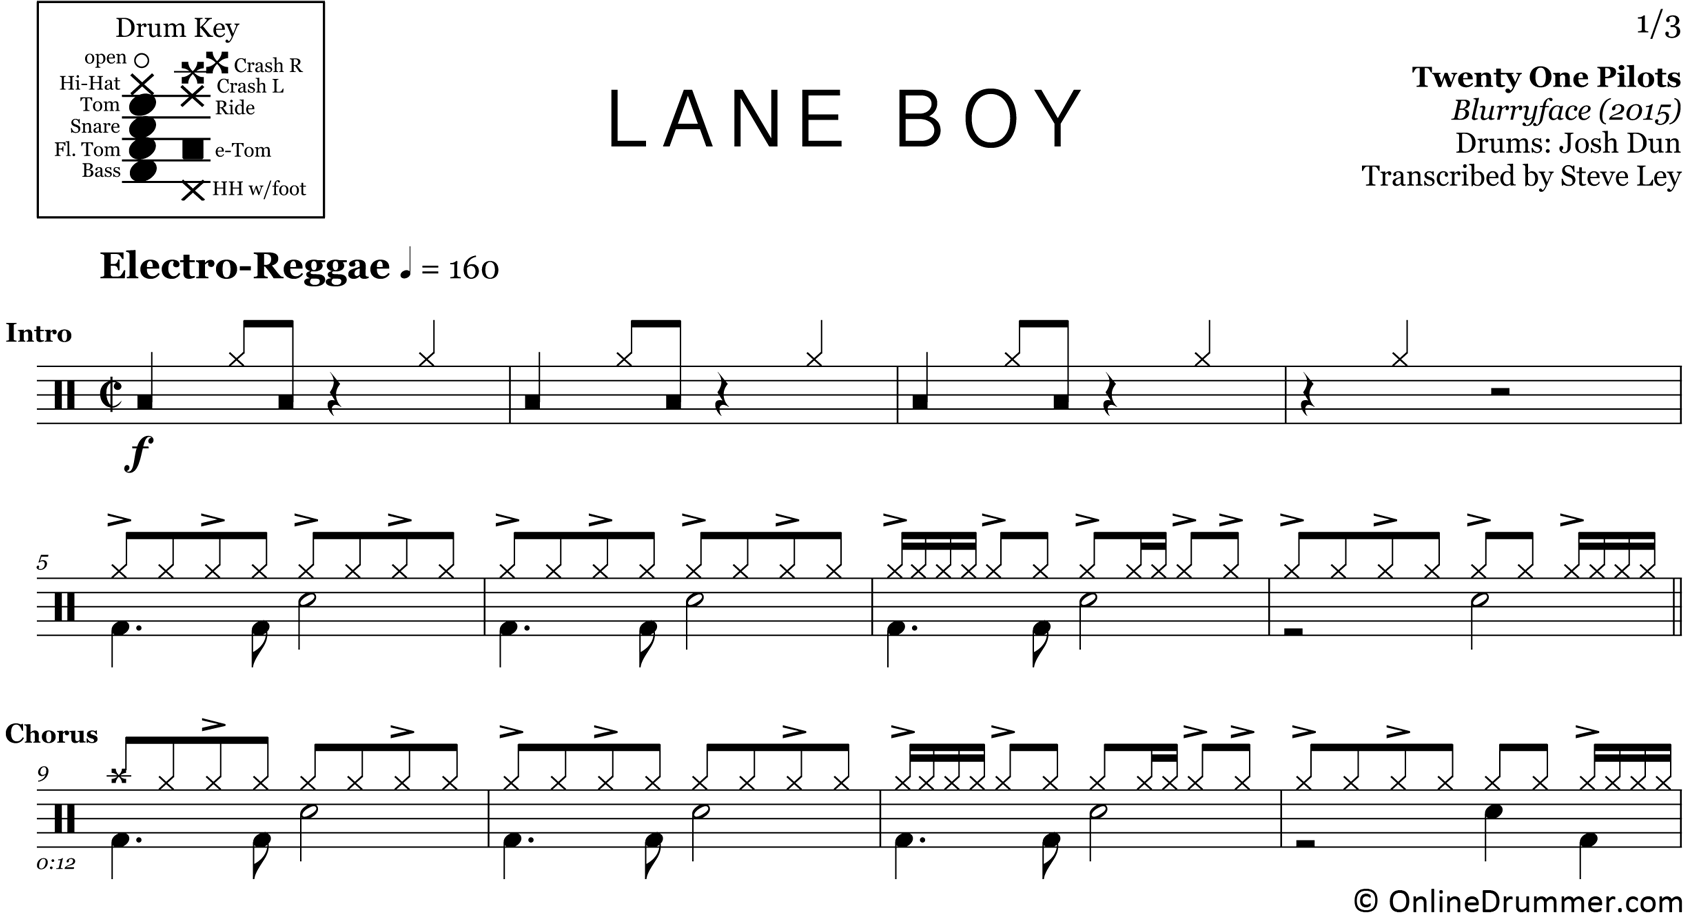 Lane Boy - Twenty One Pilots - Drum Sheet Music